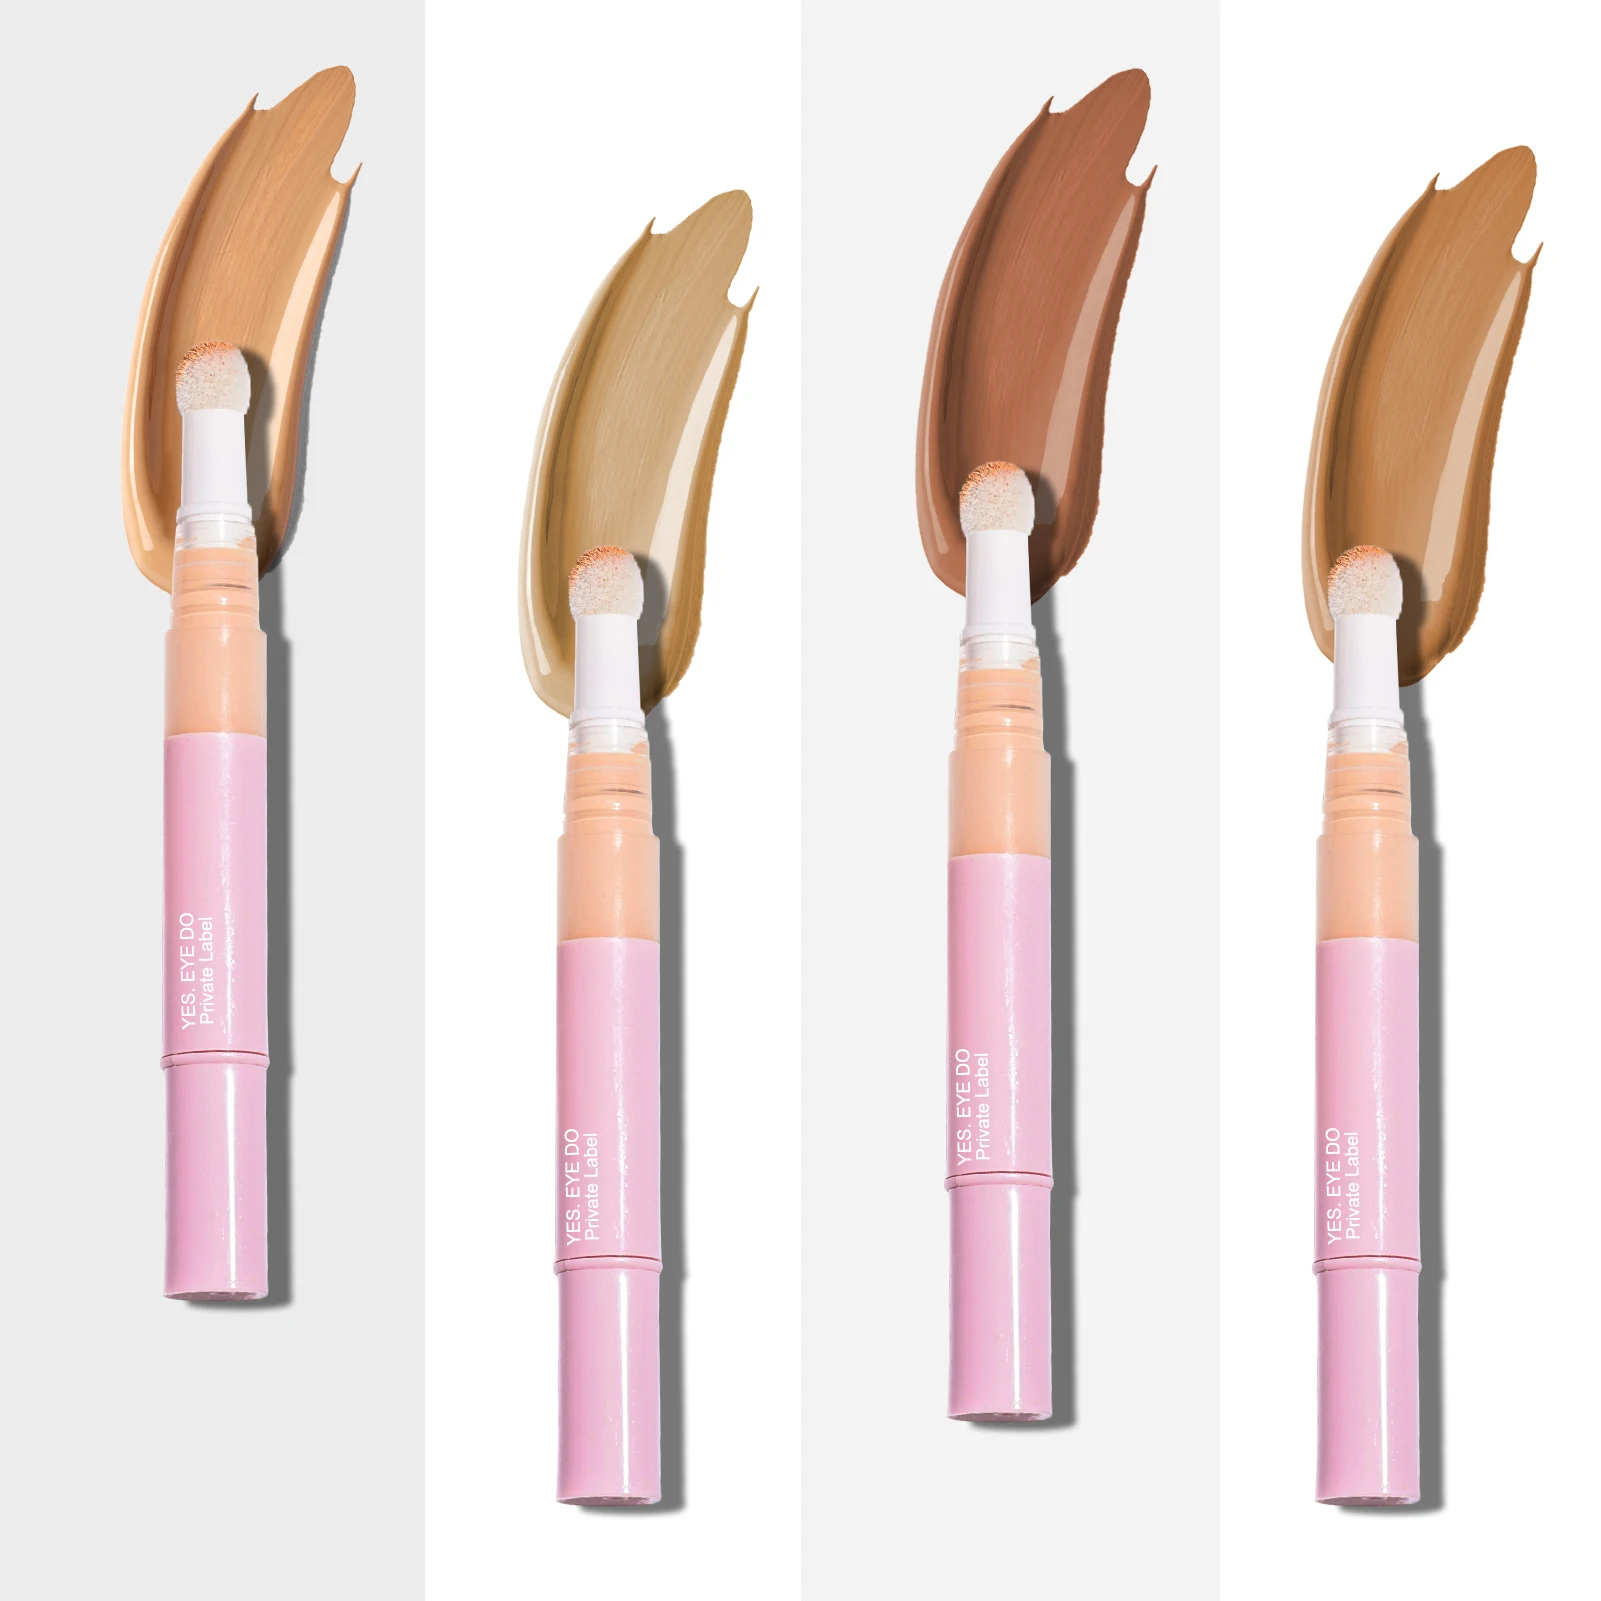 Rebrand Full Cover Liquid Concealer Makeup Pen Foundation Primer Stick Face Contour Concealer Base Primer Cream